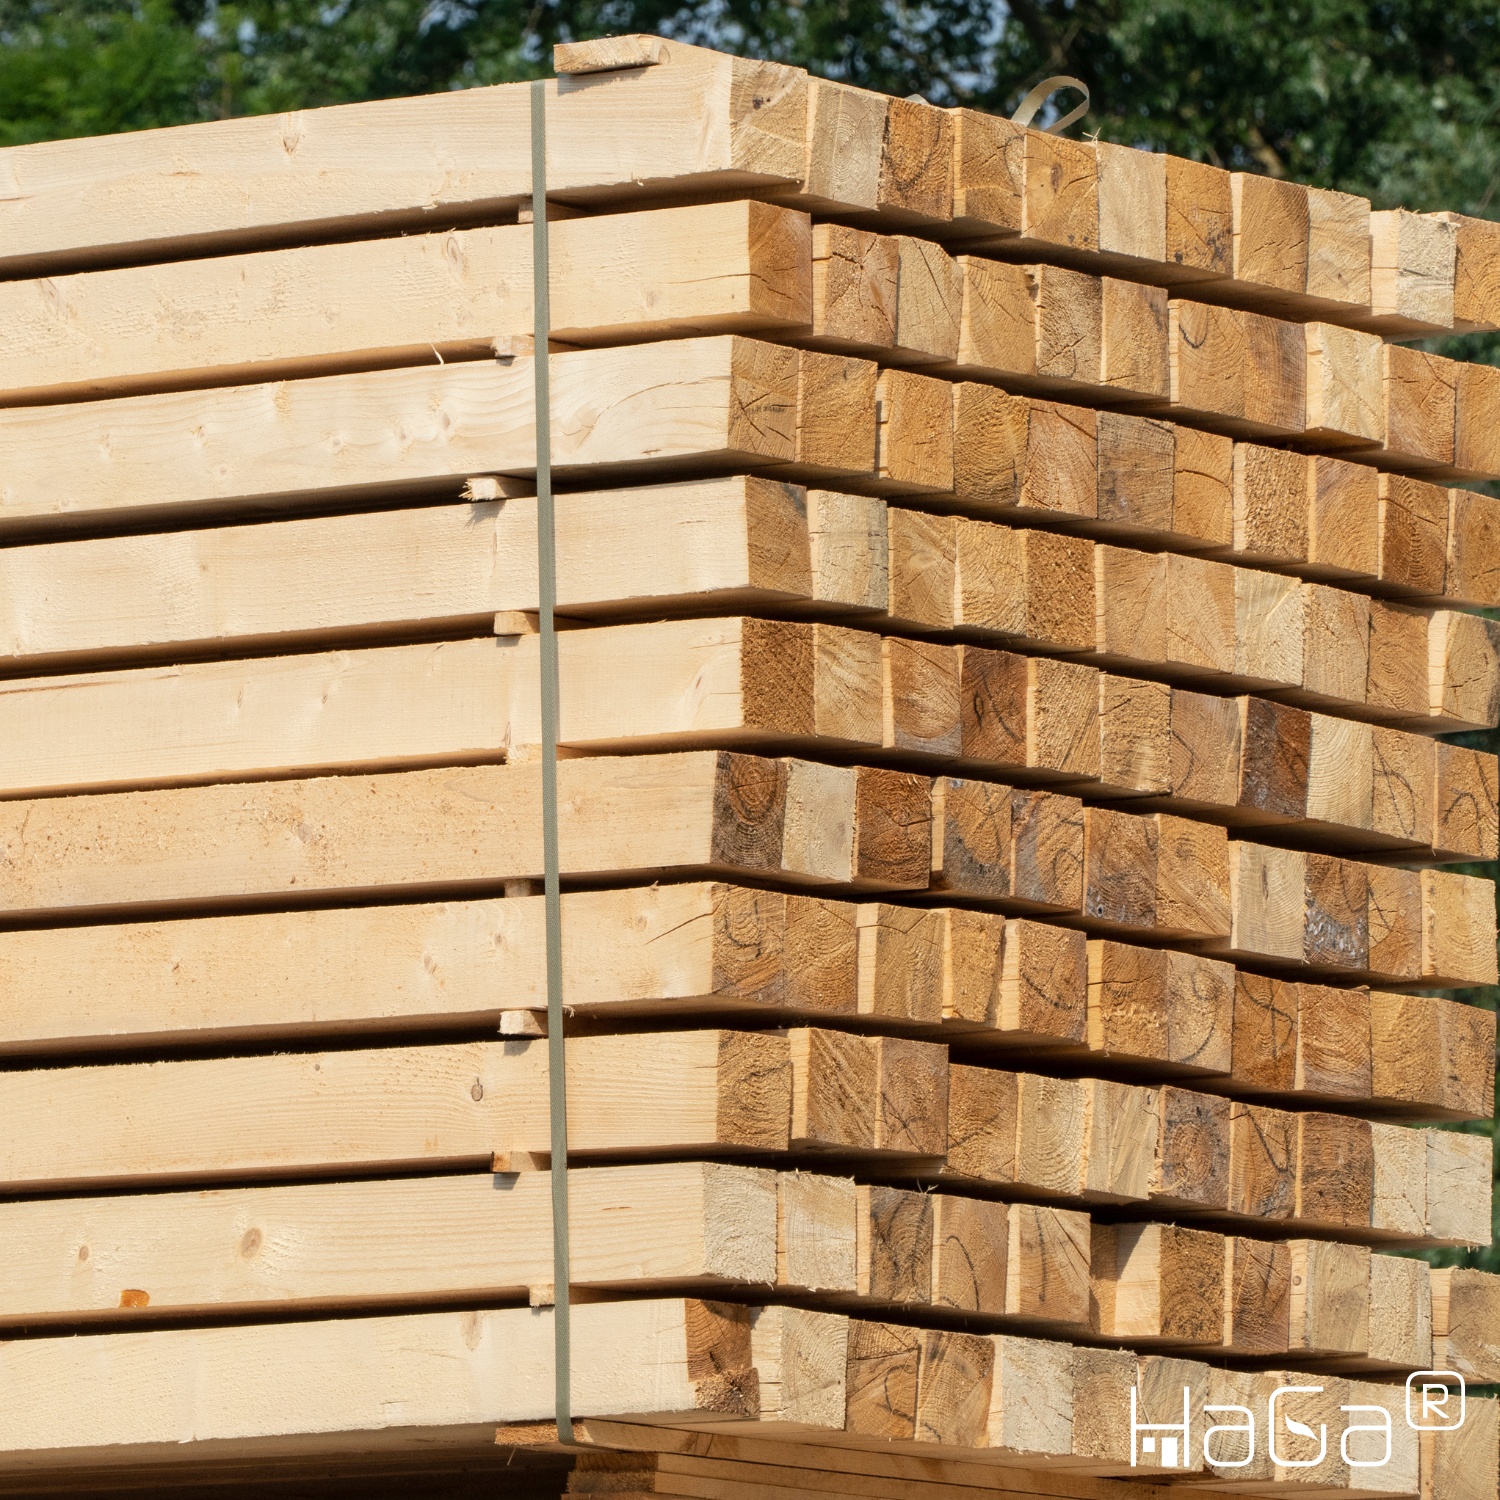 Holzpfosten 7cm x 7cm x 180cm KDI-grün Kantholz Pfosten für Gartenzaun